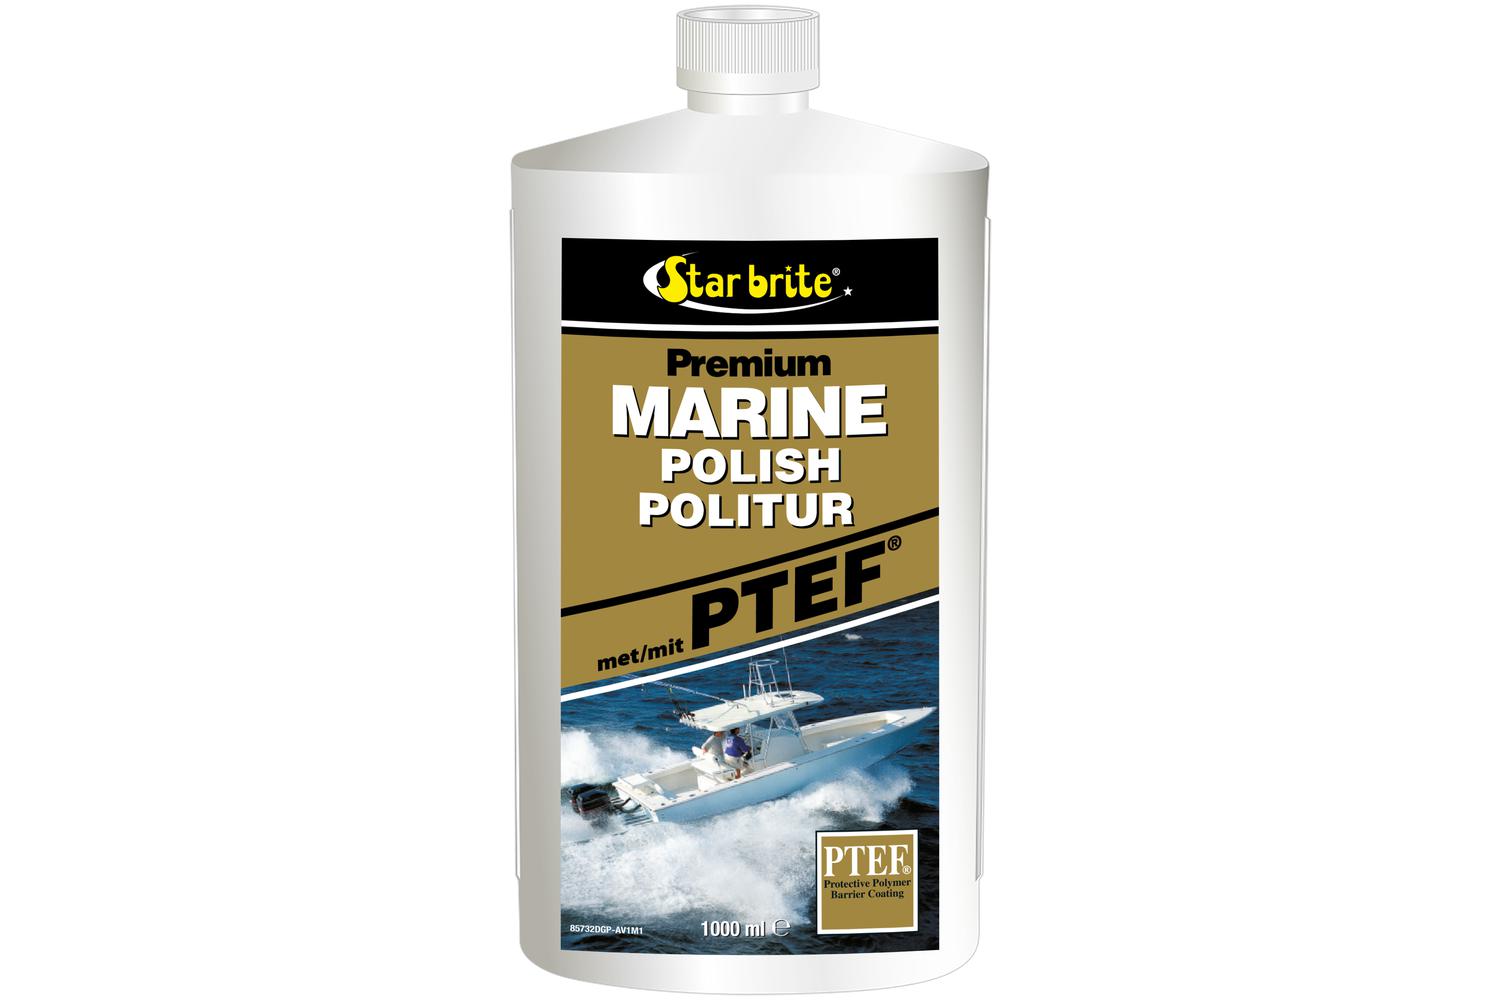 Starbrite Premium Marine Polish met PTEF® 1000 ml